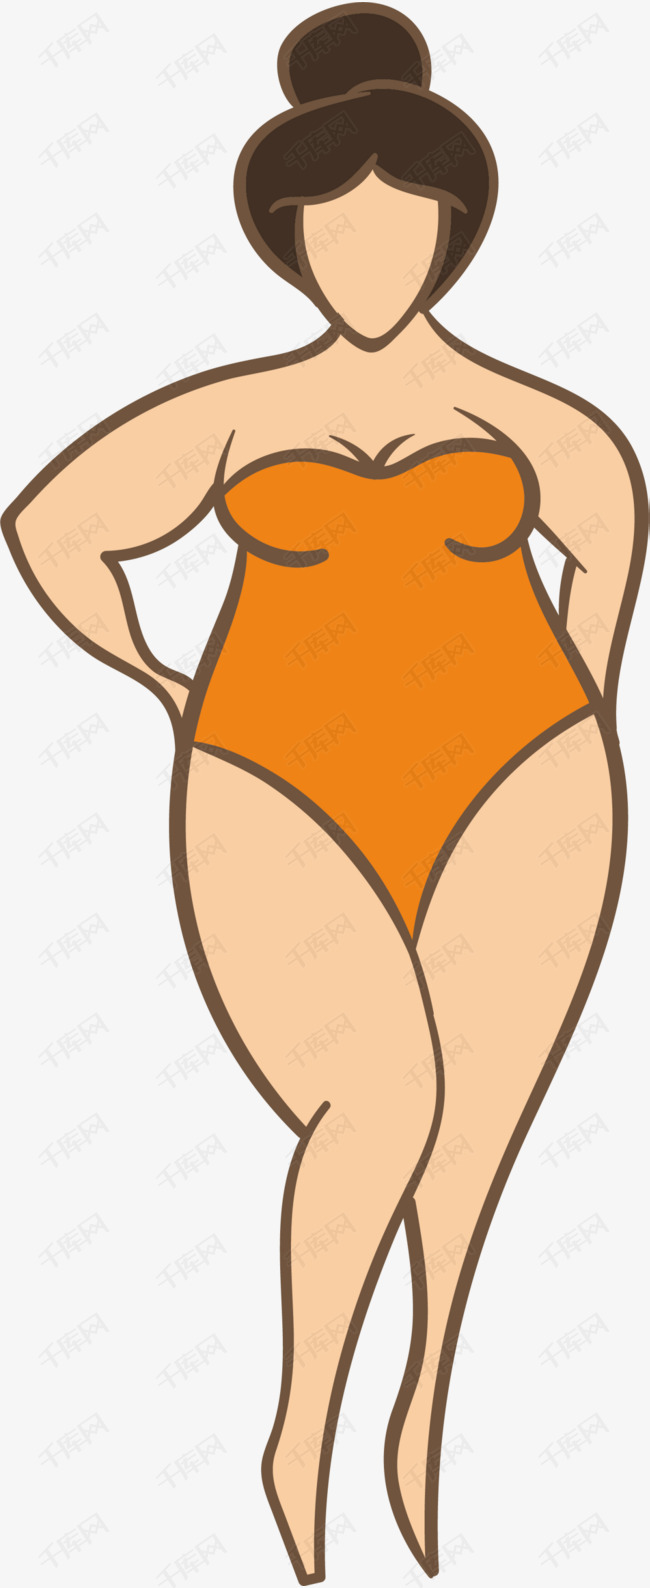 卡通橙色扁平胖女孩的素材免抠卡通女孩胖女孩世界肥胖日健康体重胖子